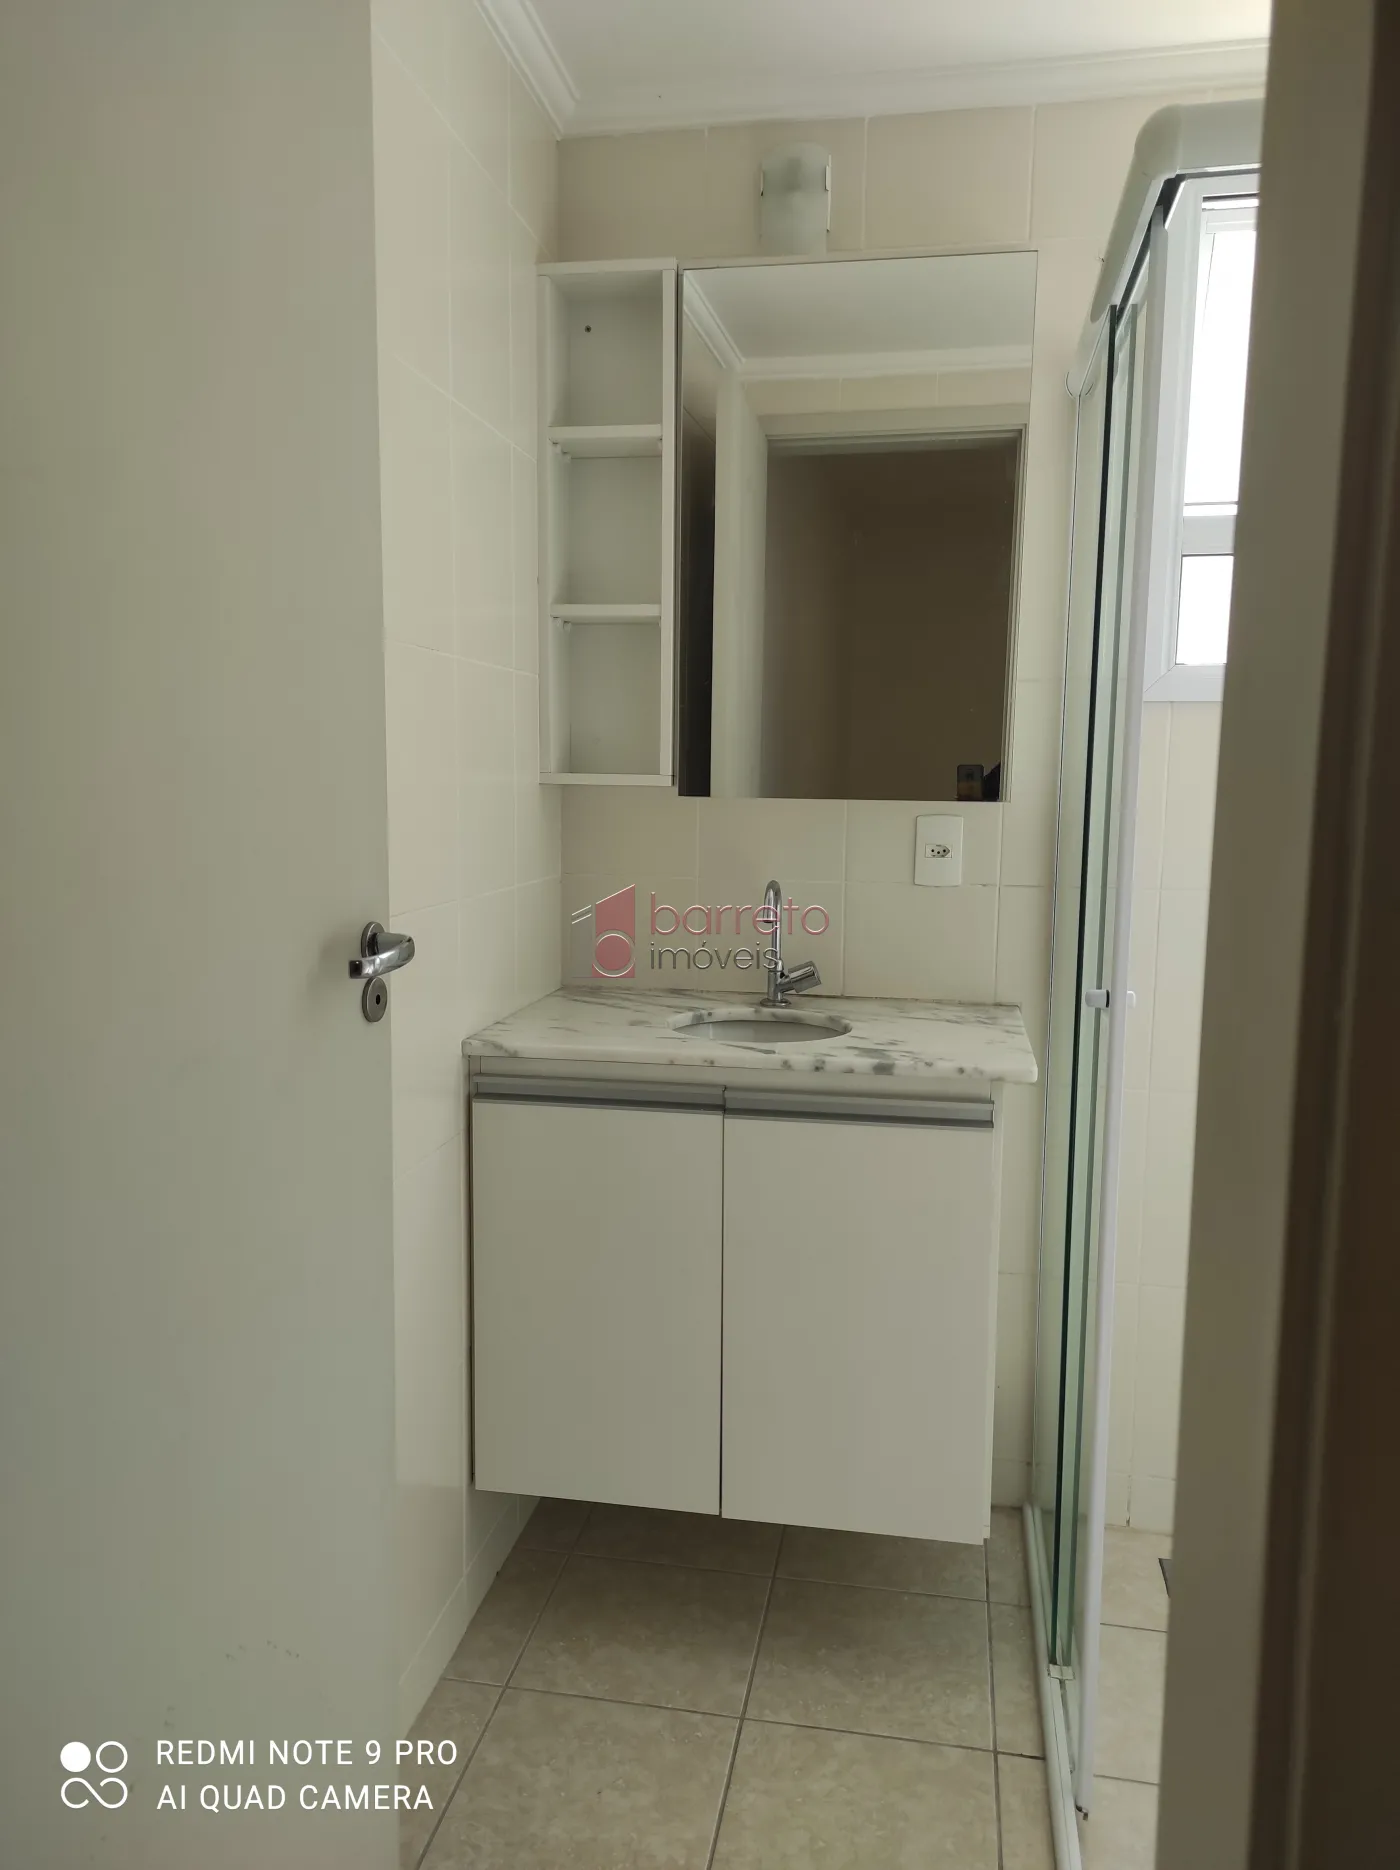 Alugar Apartamento / Padrão em Jundiaí R$ 2.700,00 - Foto 10